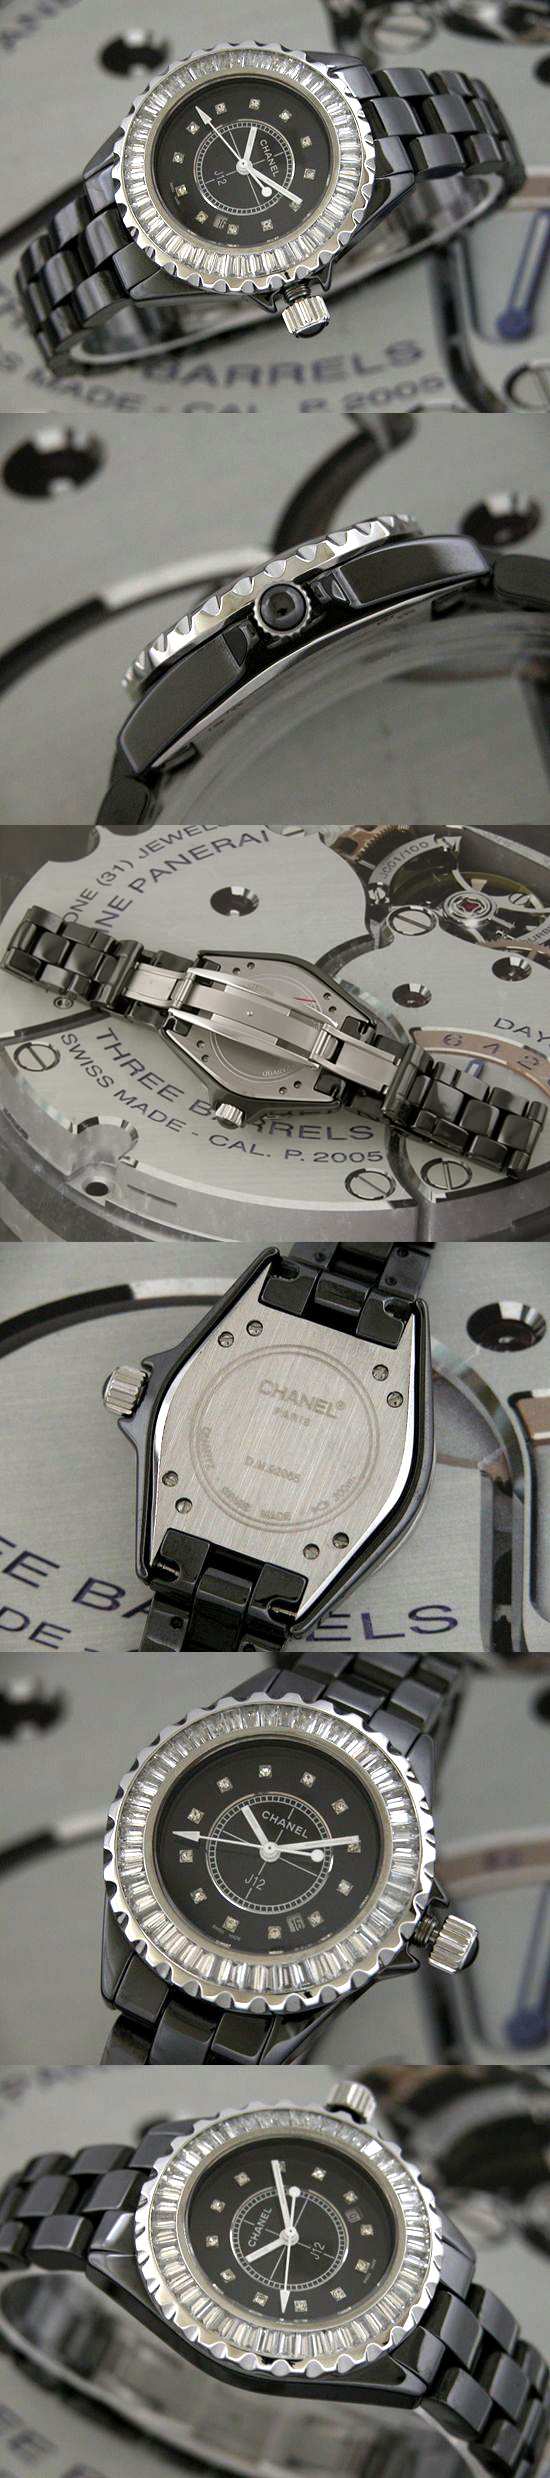 おしゃれなブランド時計がシャネル-CHANEL-H2014-aw-J12-女性用を提供します.